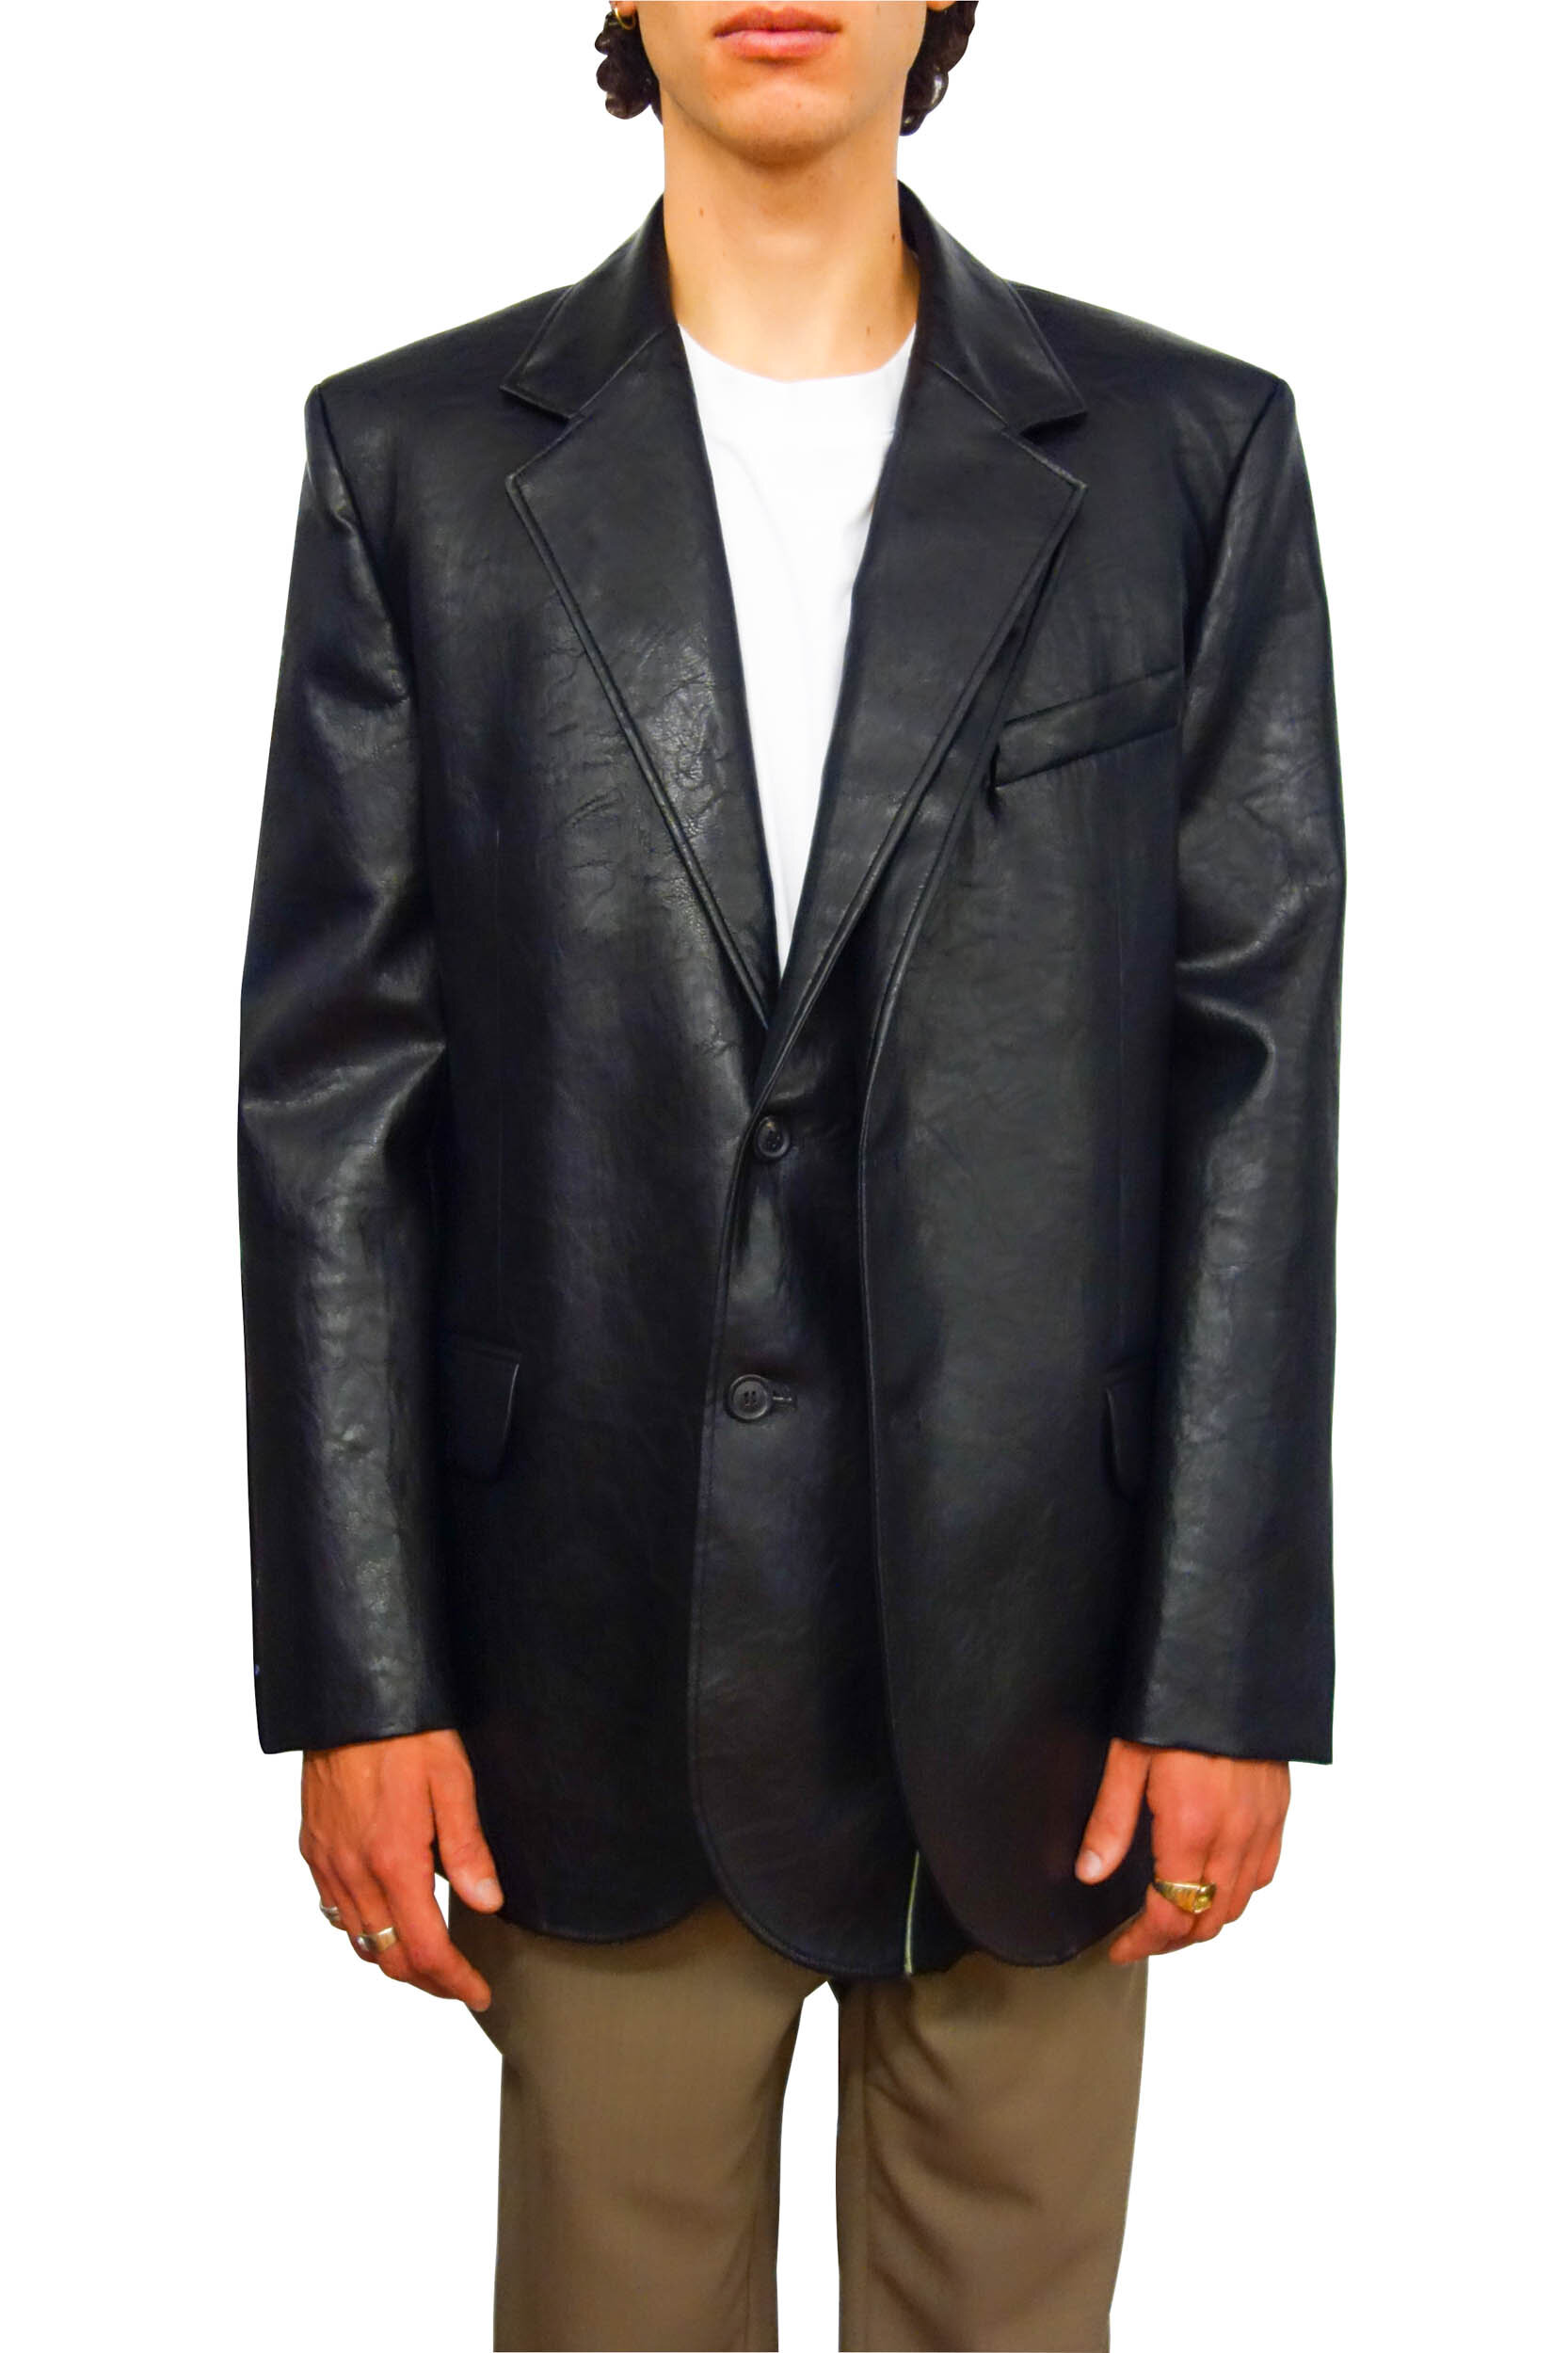 yproject classic contraband blazer ジャケット - テーラードジャケット